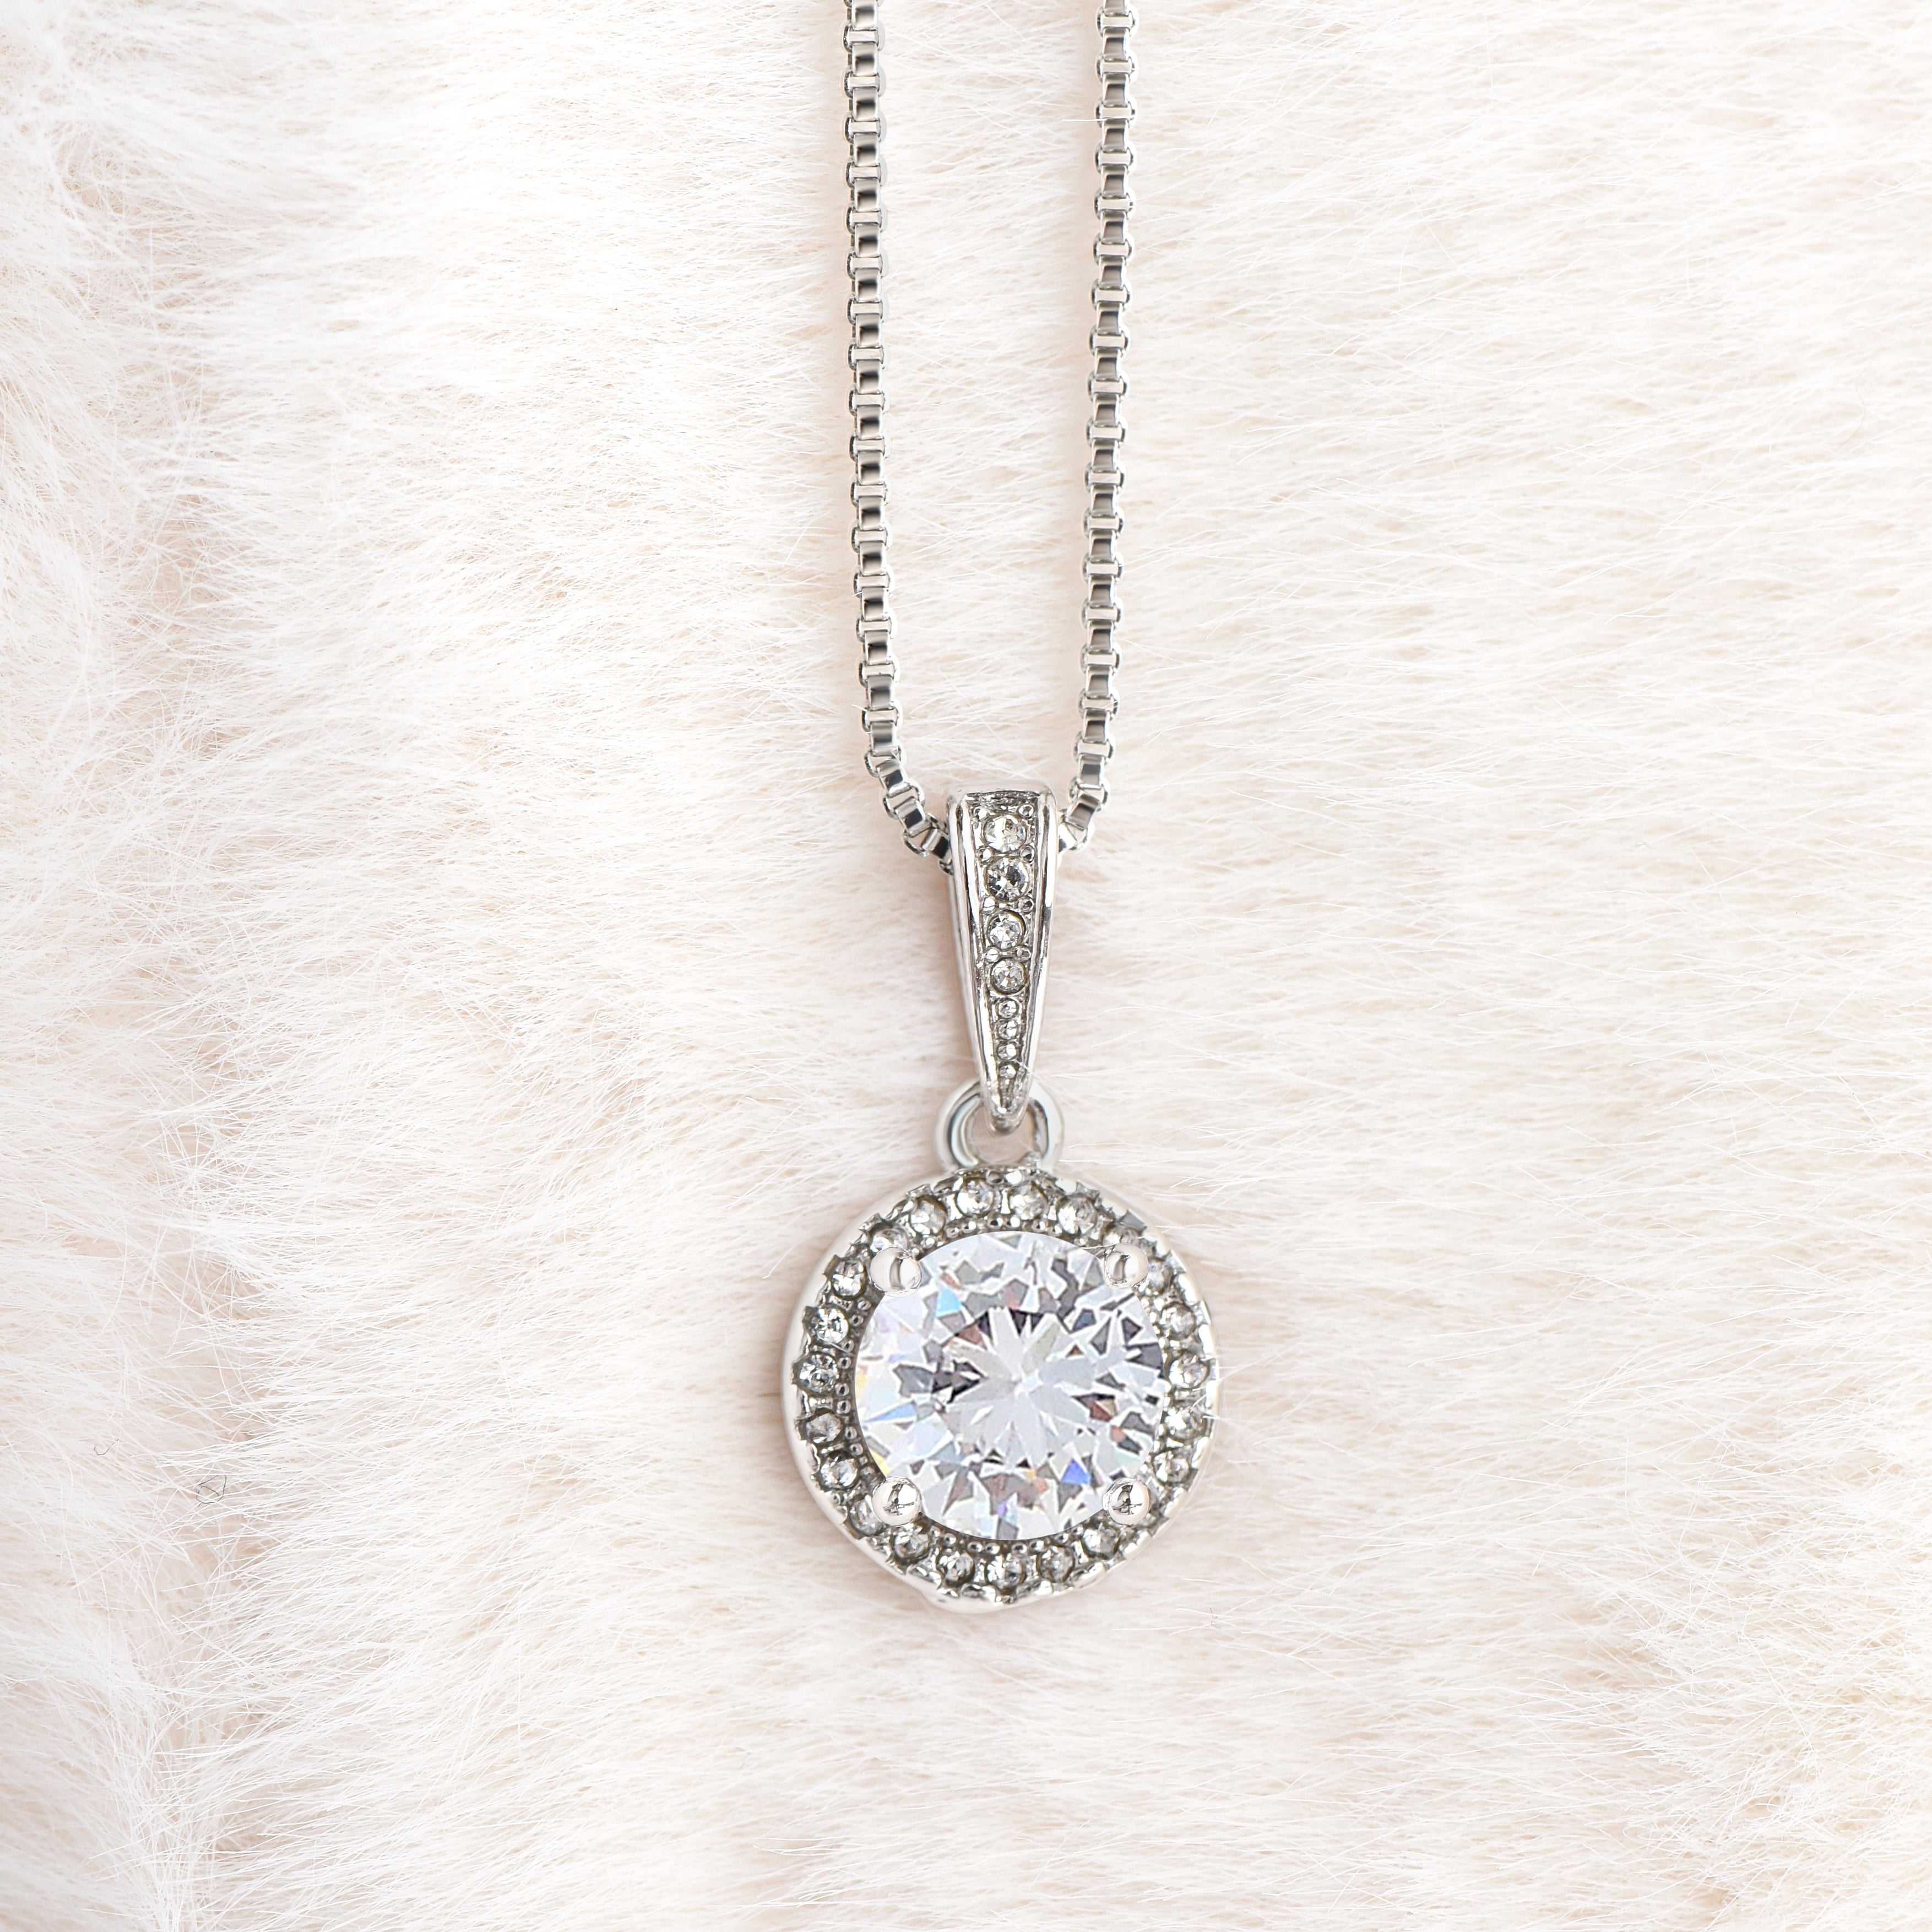 Personalized Daughter Necklace: Elegant Bond, Premium Cubic-Zirconia